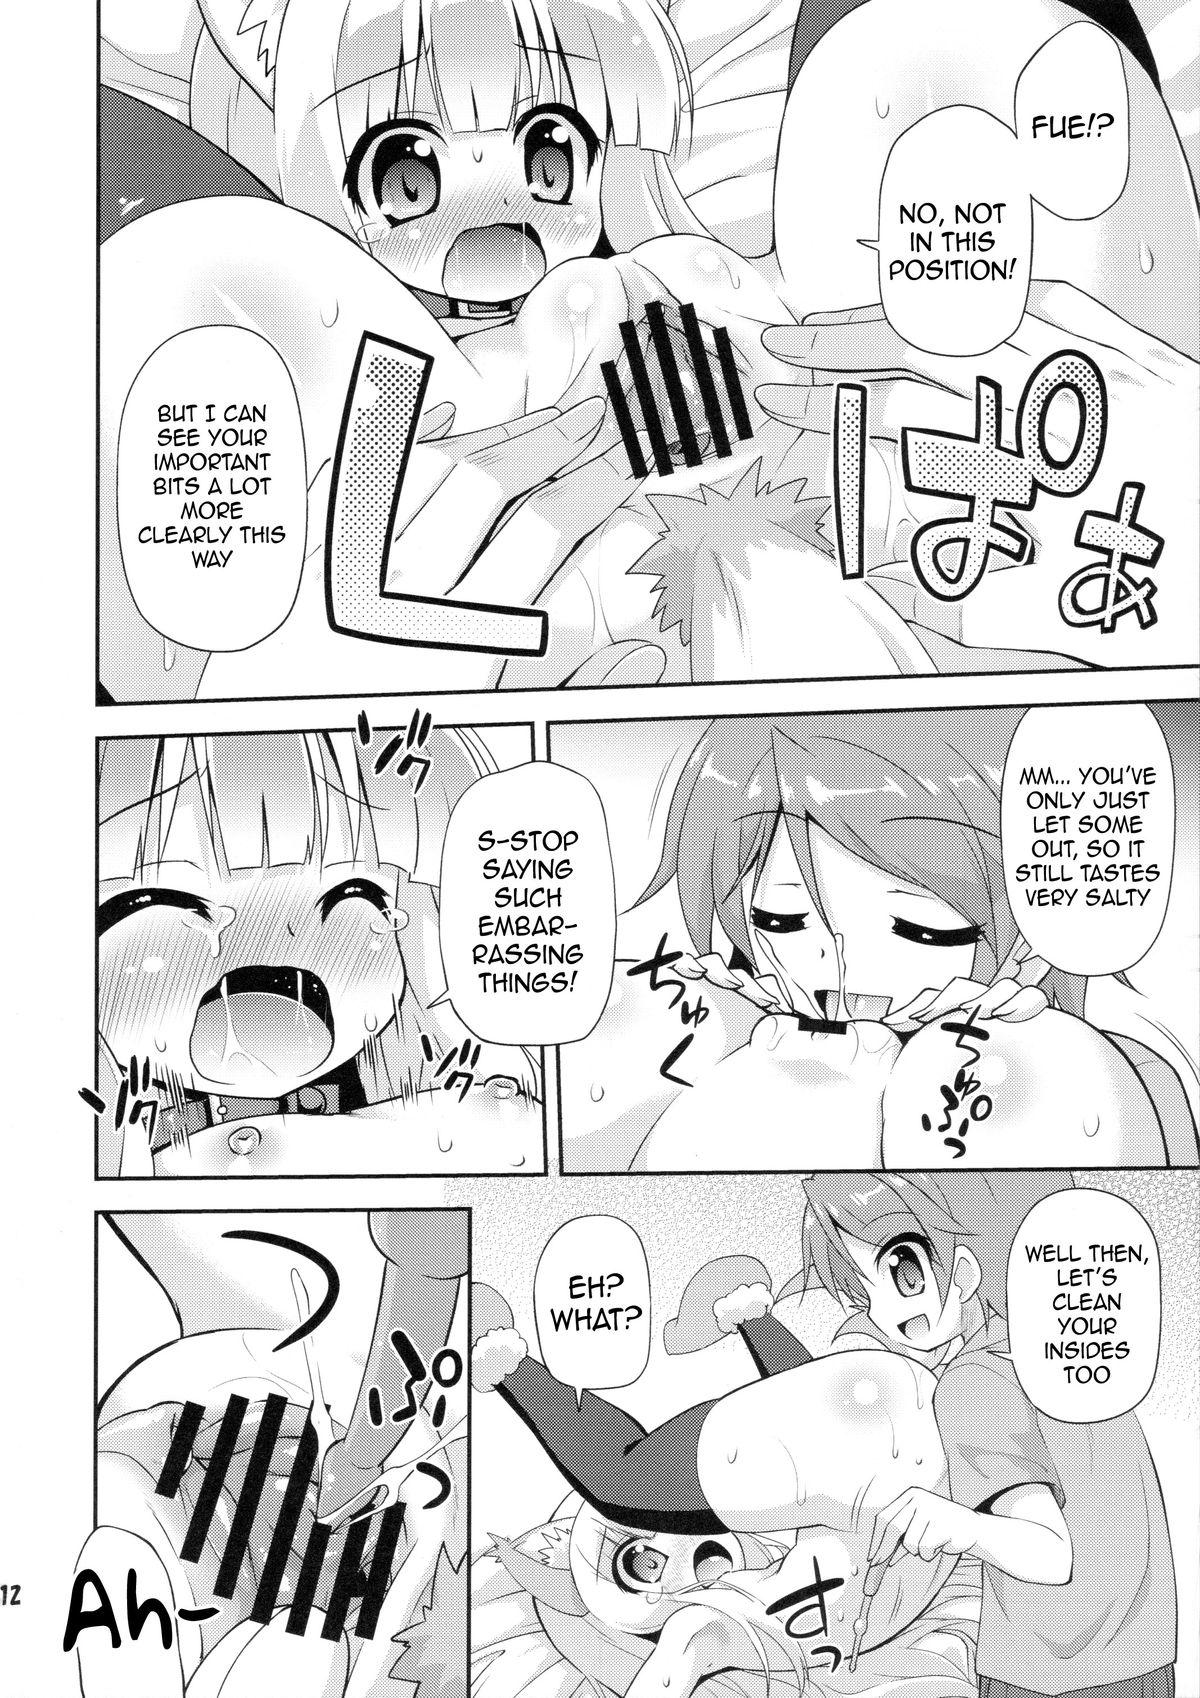 Jerking Off HENTAI wa Home Kotoba da! - "HENTAI" is a eulogy! - Hentai ouji to warawanai neko Cum Shot - Page 11